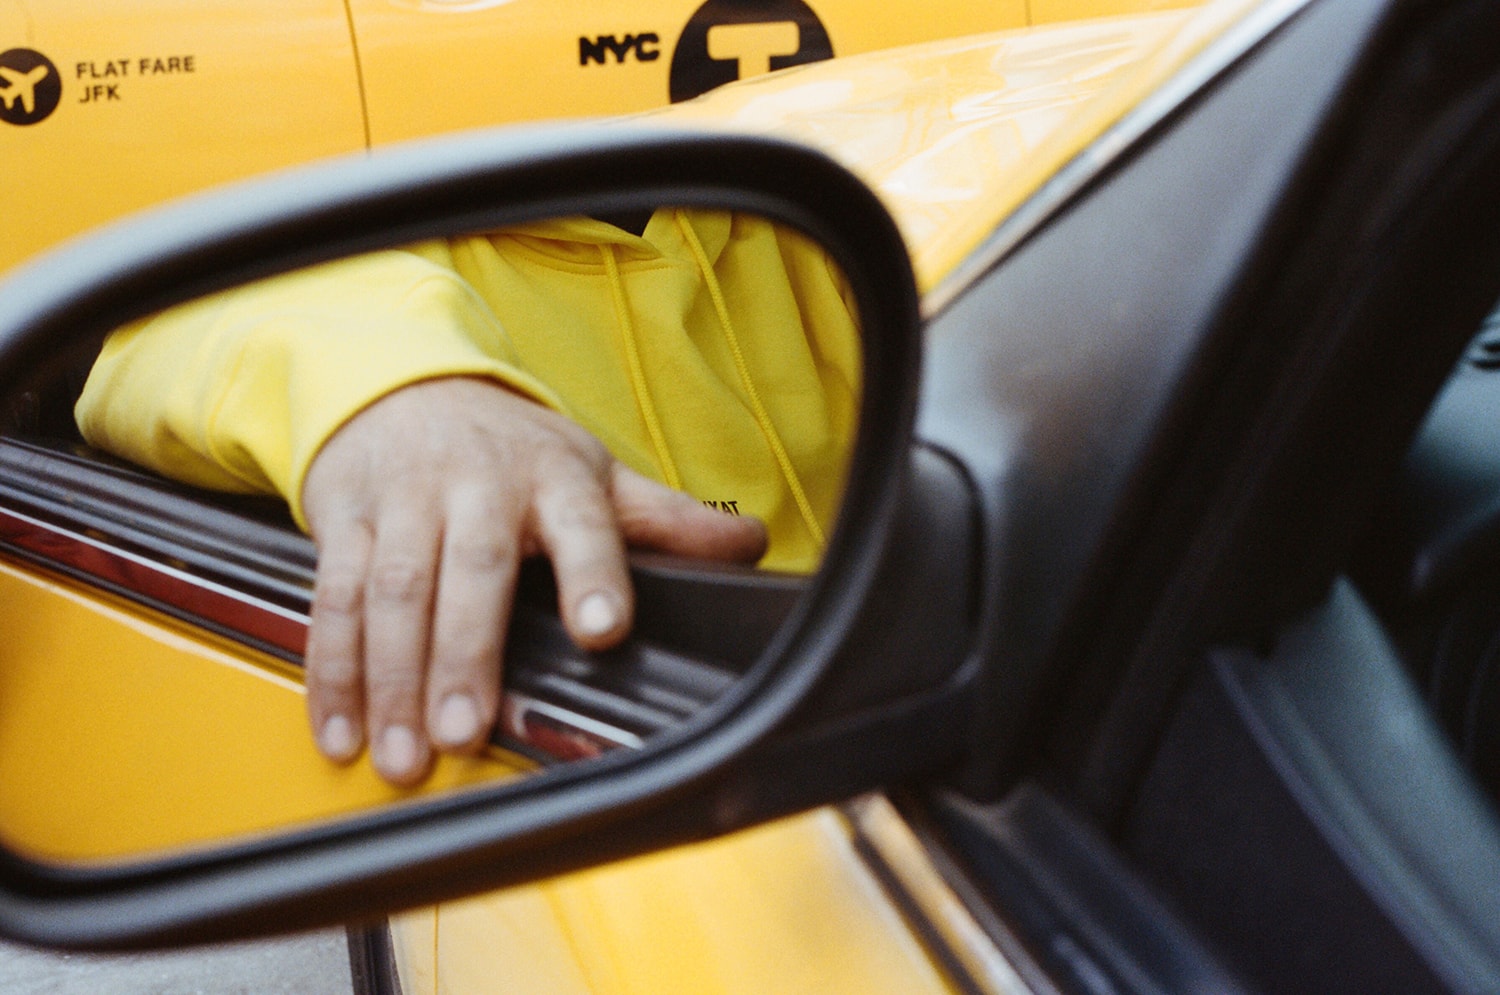 헬무트 랭 뉴욕 택시 프로젝트 2017 helmut lang taxi project new york city barneys bergdorf goodman harrods harvey nichols matches fashion selfridges